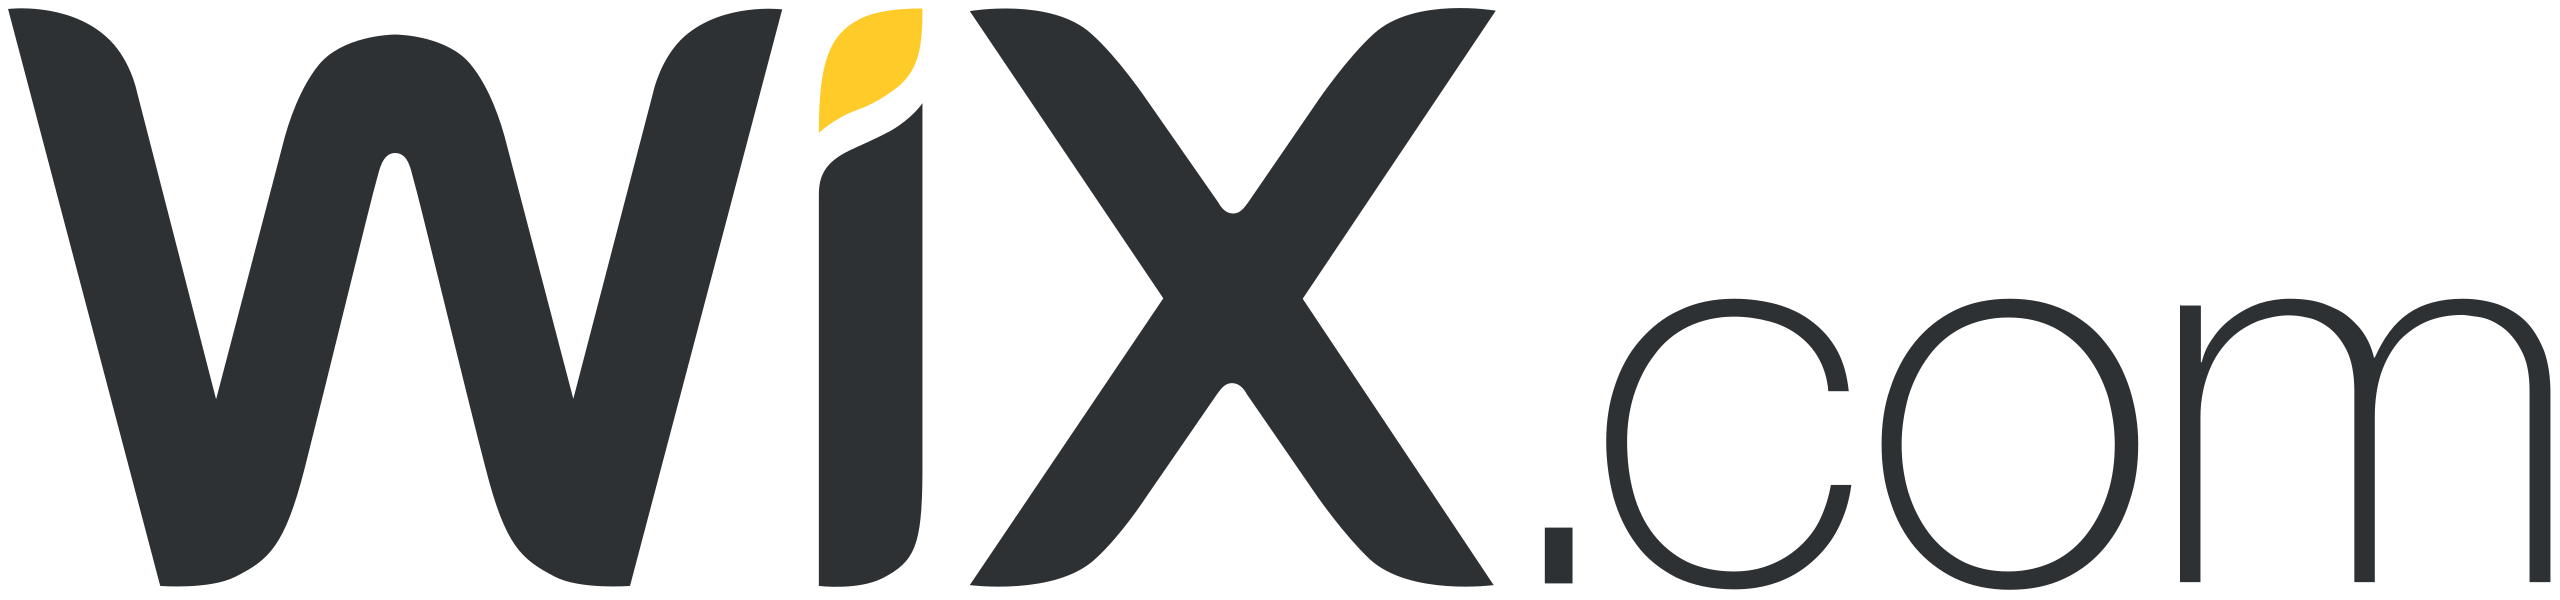 Logo Wix